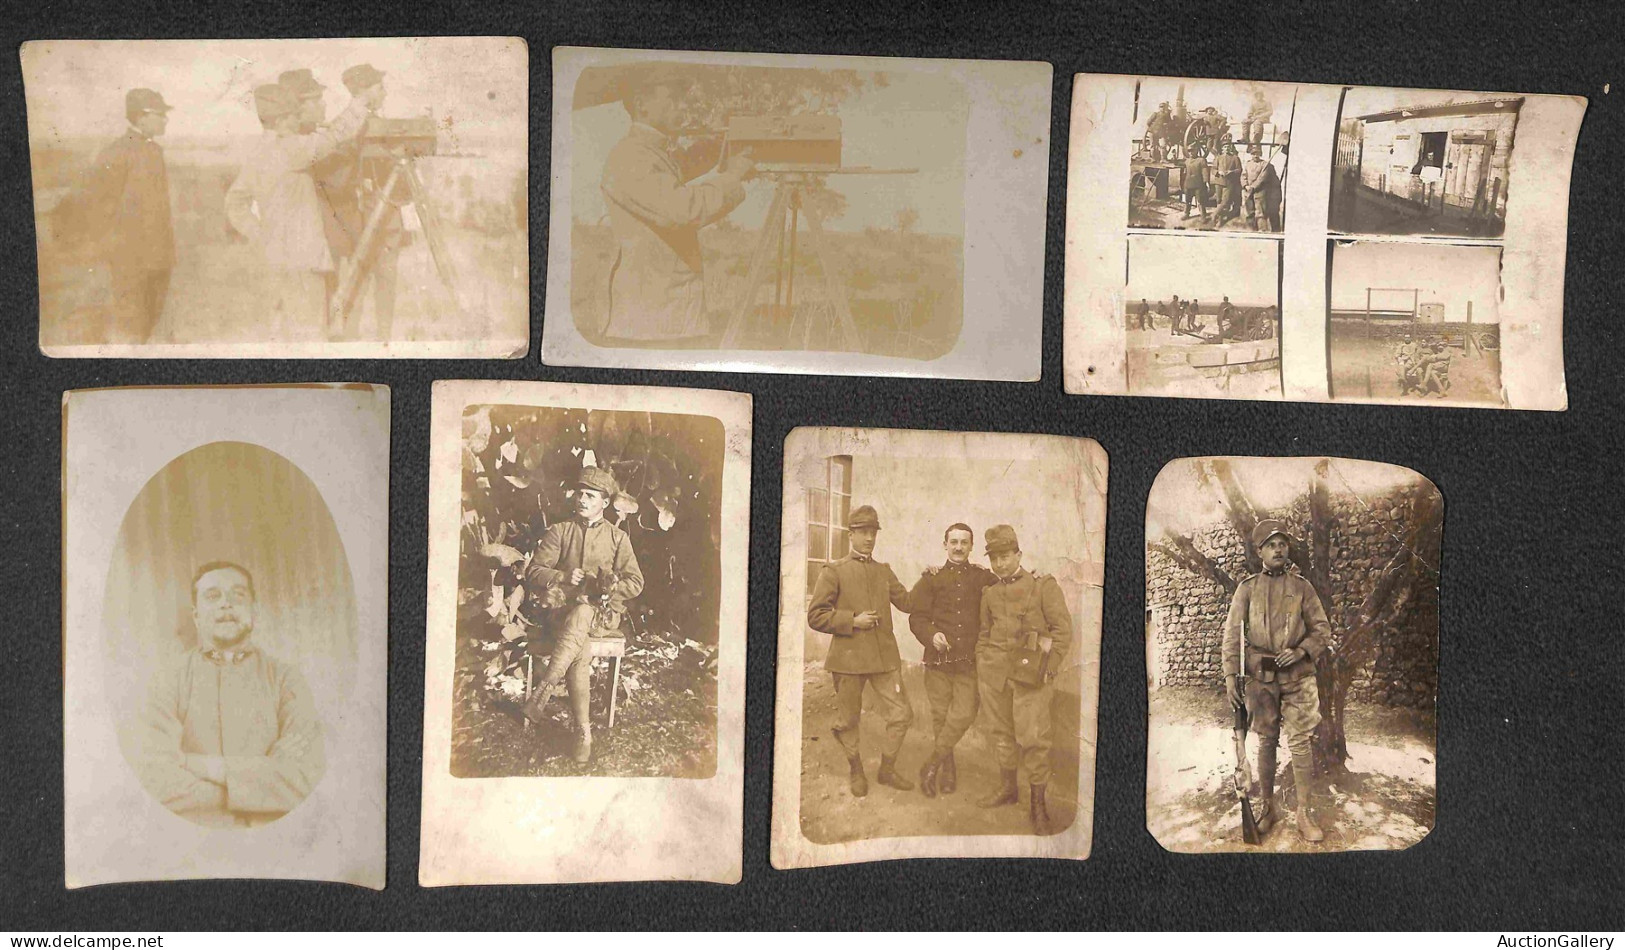 Colonie - Libia - Guerra di Libia - Militari (singoli - gruppi - postazioni) - 41 fotografie d'epoca (anche formato cart